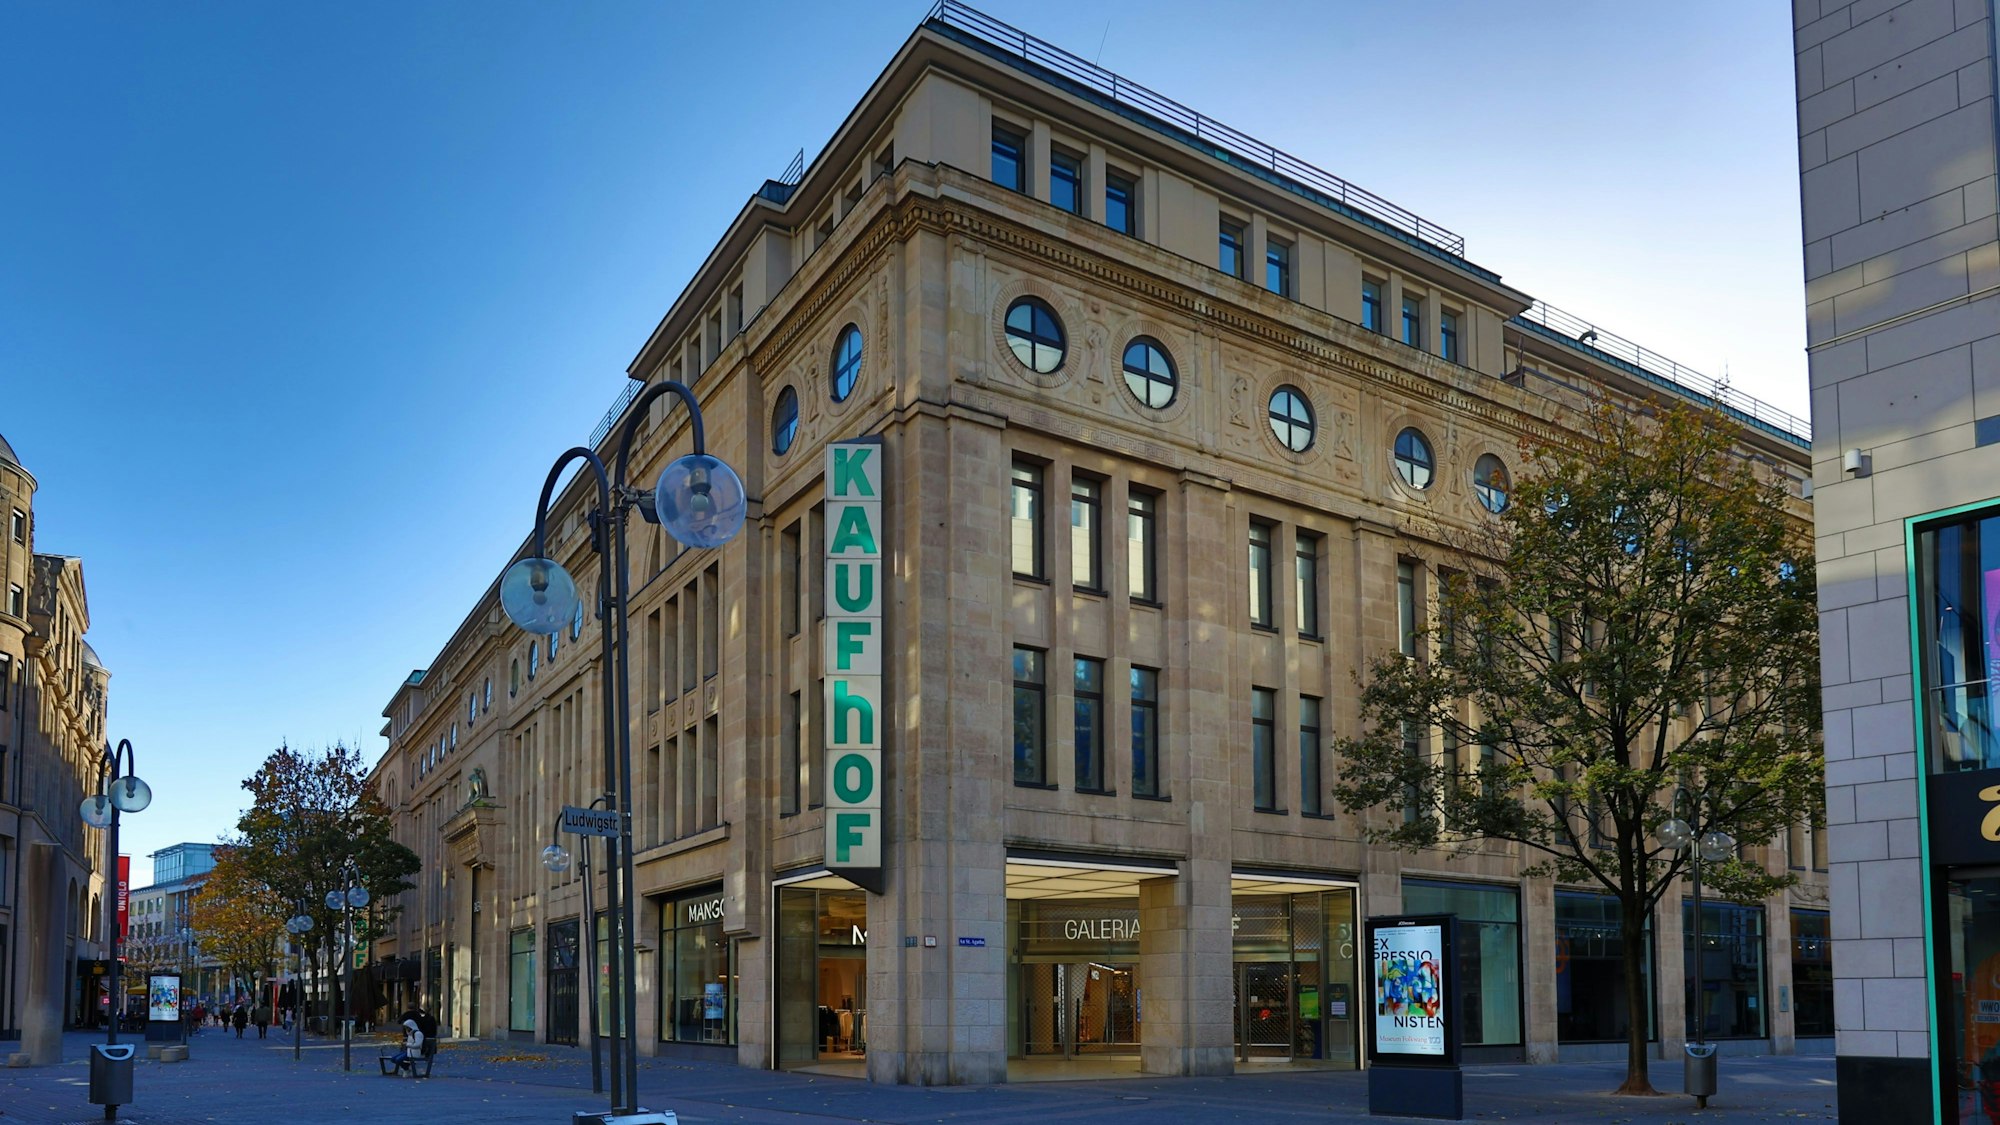 Außenansicht des viergeschossigen Galeria Karstadt Kaufhof-Gebäudes in der Kölner Schildergasse. Die helle Sandsteinfassade hebt sich vom blauem Himmel ab, der über zwei Etagen reichende Schriftzug „Kaufhof“ziert eine Gebäudeecke.